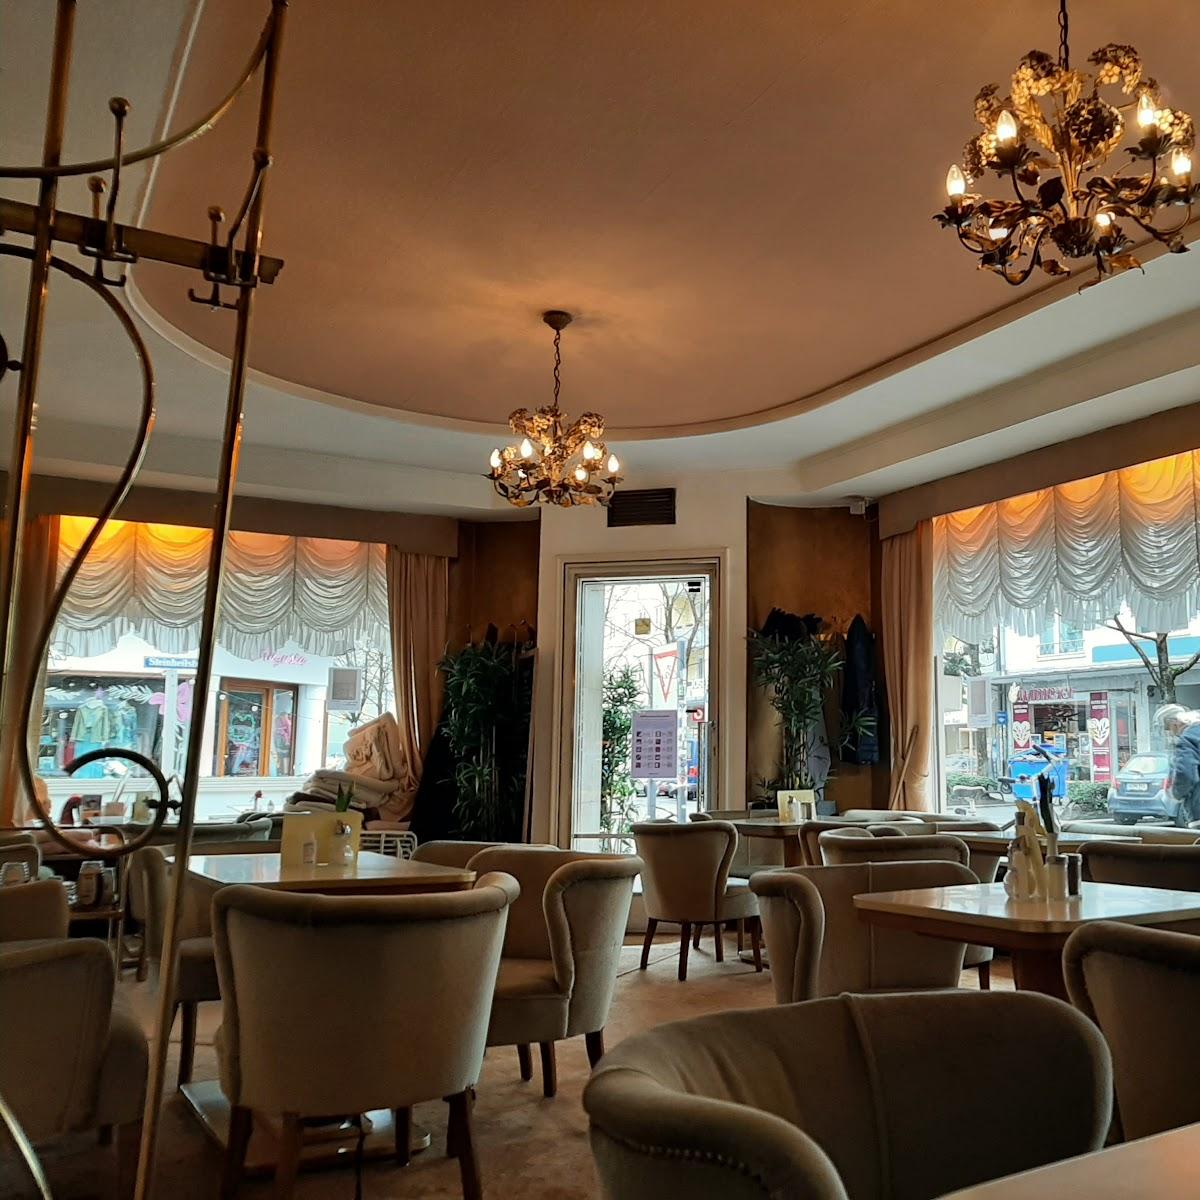 Restaurant "Café Jasmin" in München